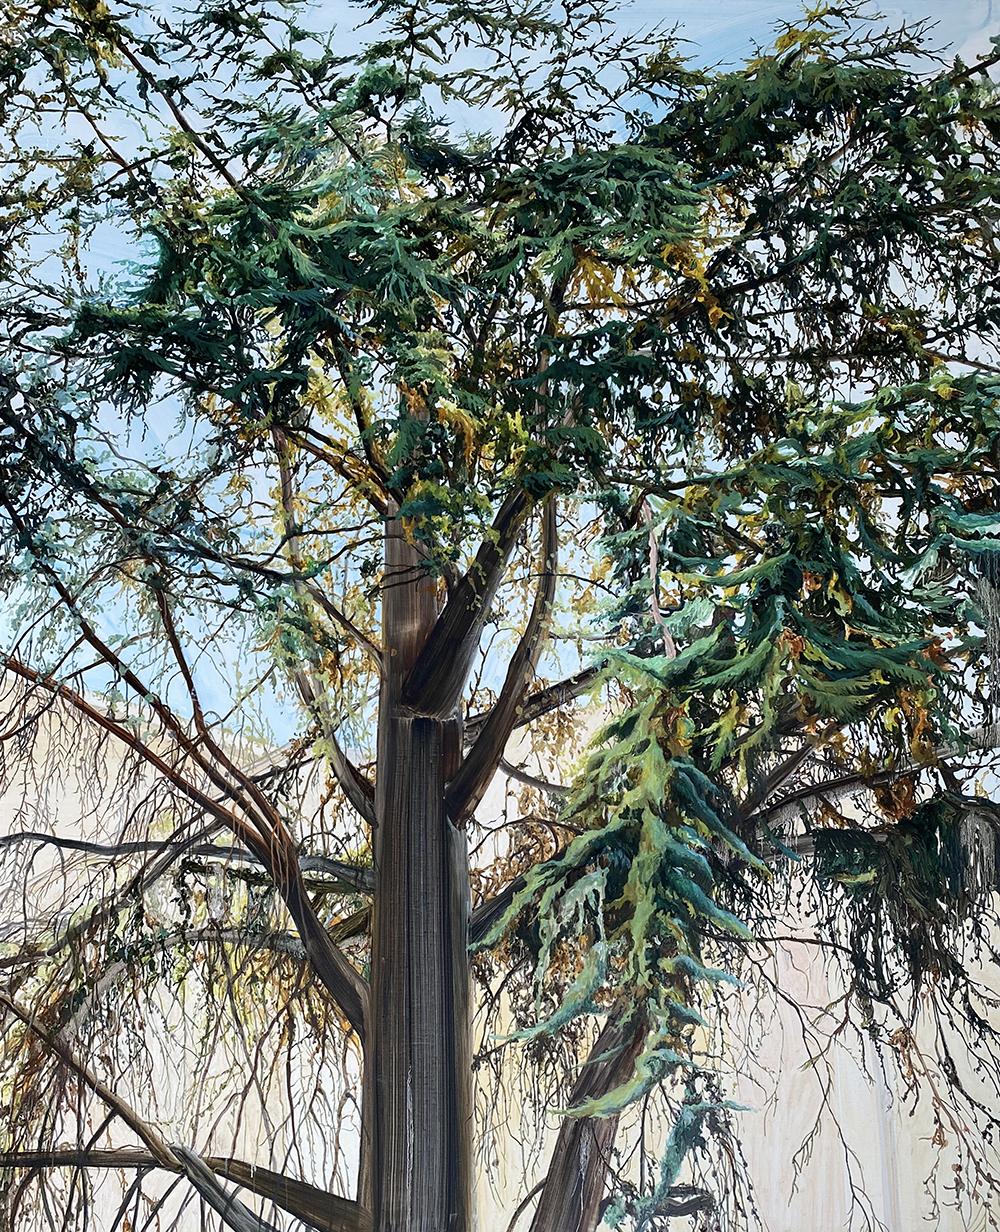 혼자 걷는 시간, Oil on canvas, 130 x 162 cm, 2020